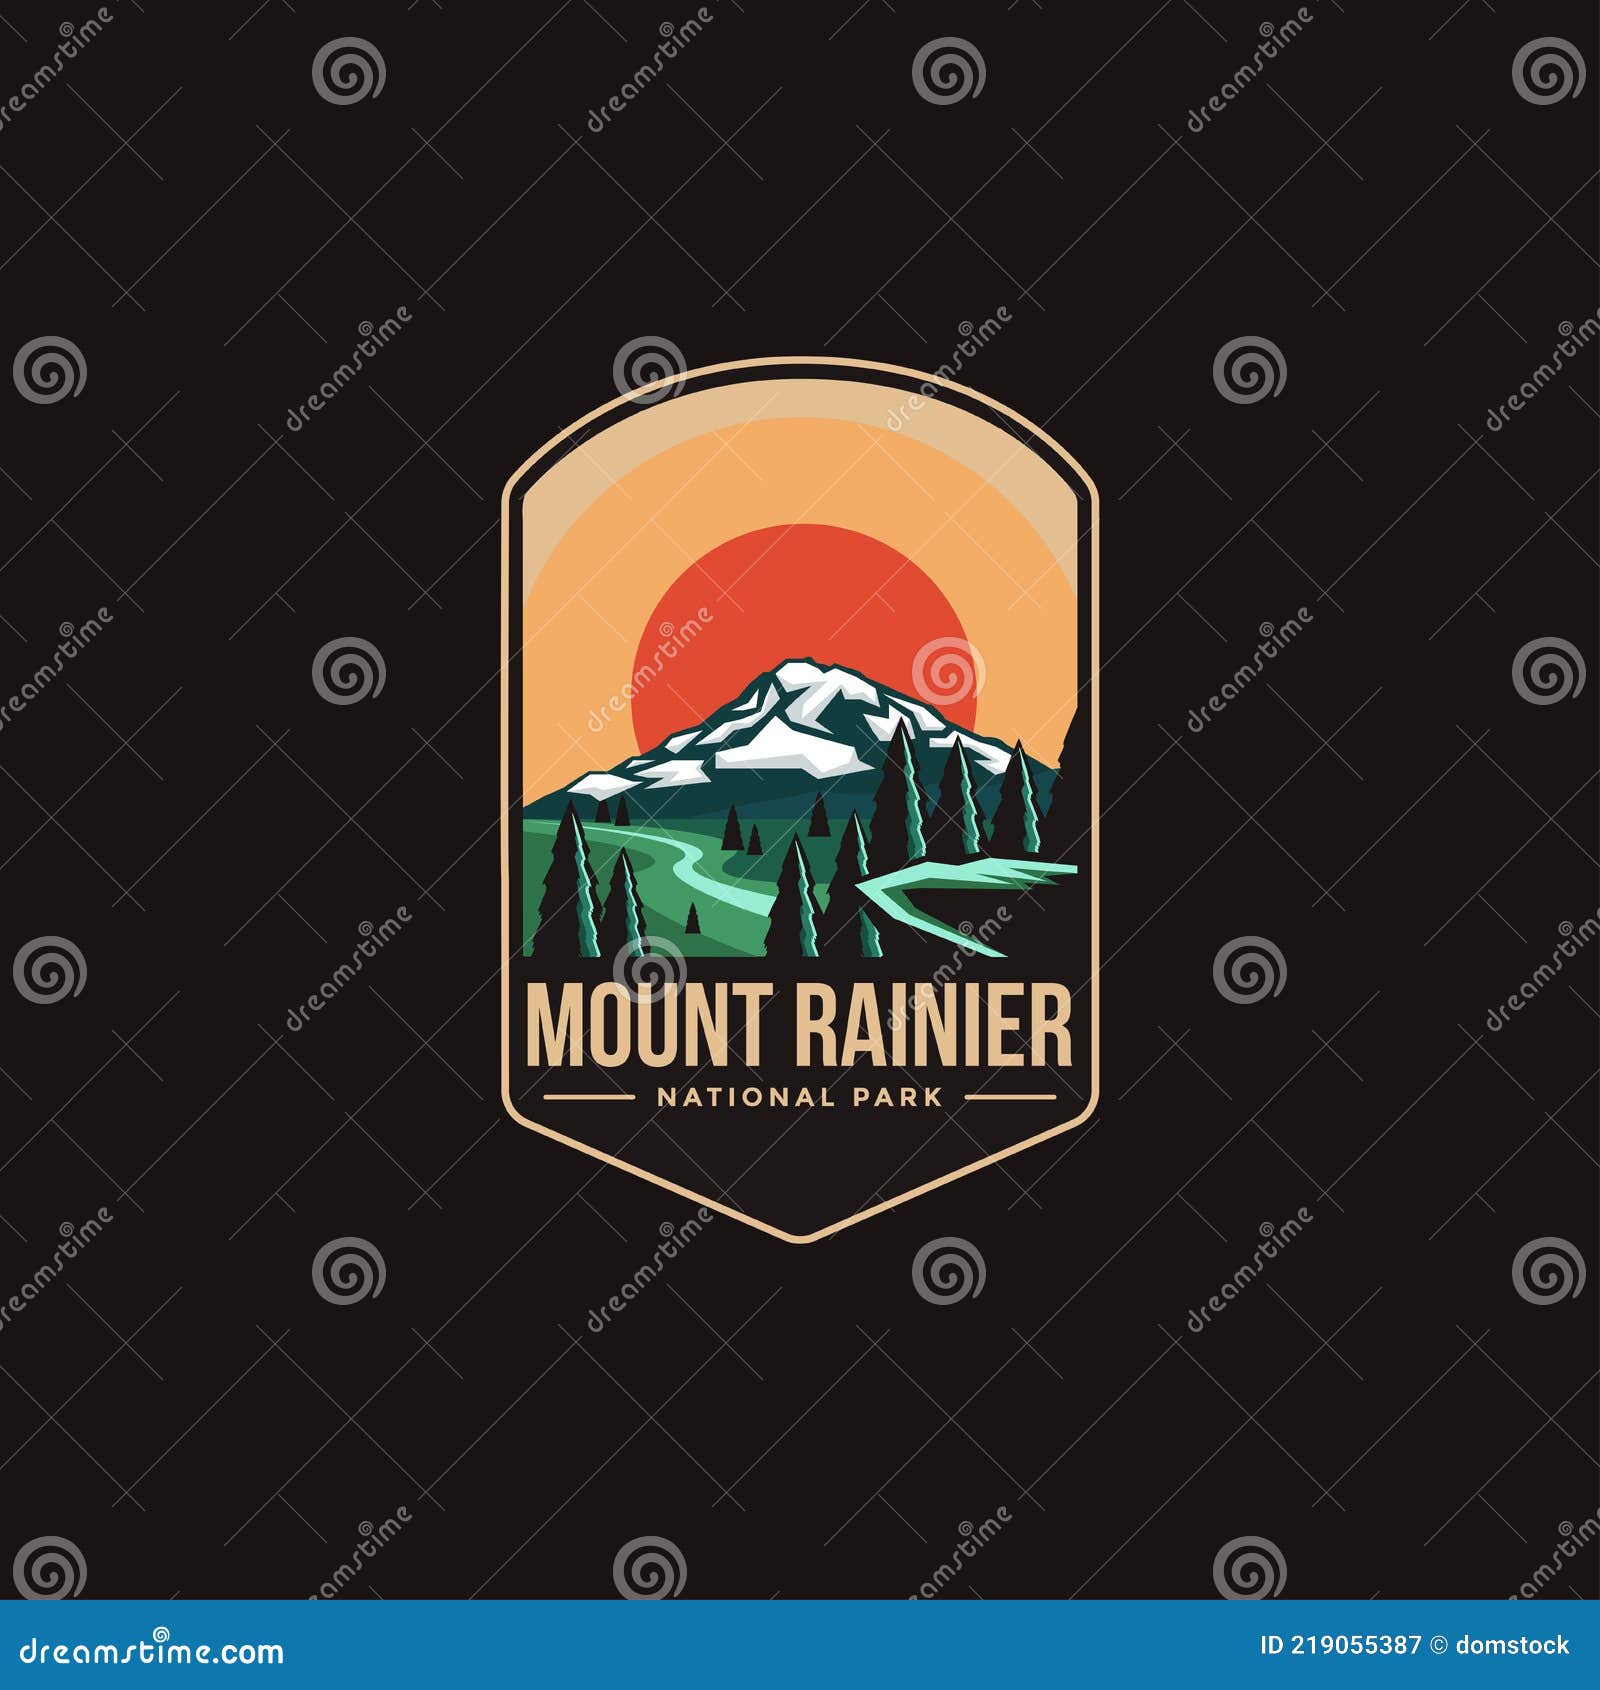 emblem patch logo  of mount rainier national park